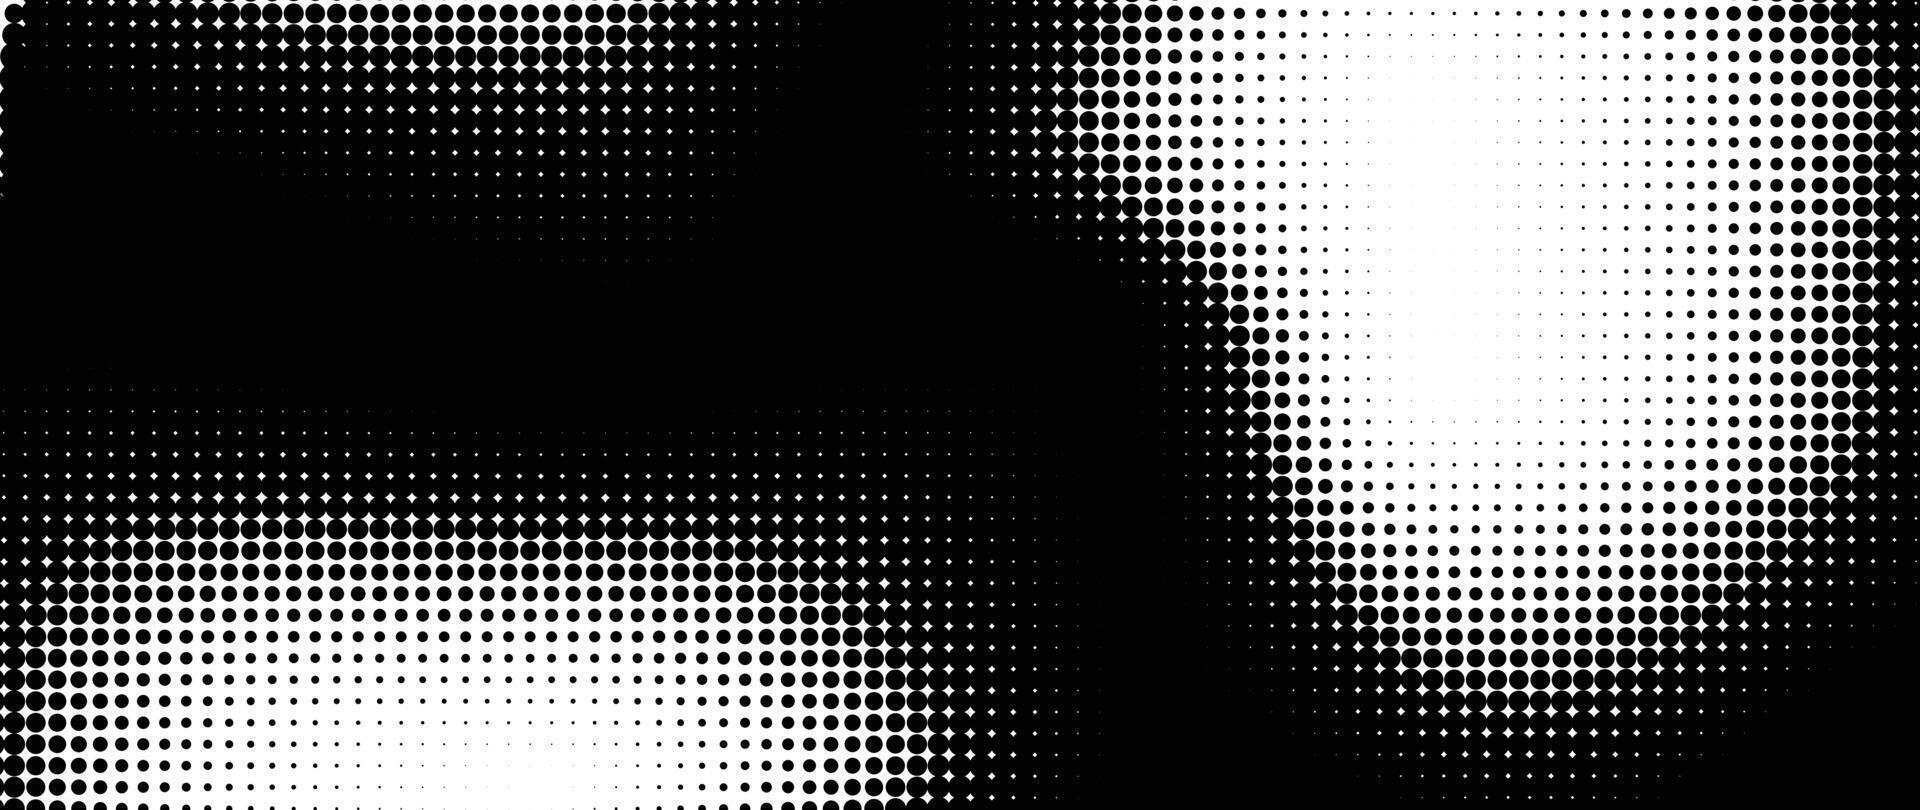 halvton punkt bakgrund mönster vektor illustration. svartvit lutning prickad modern textur och blekna bedrövad täcka över. design för affisch, omslag, baner, företag kort, mock-up, klistermärke, layout.